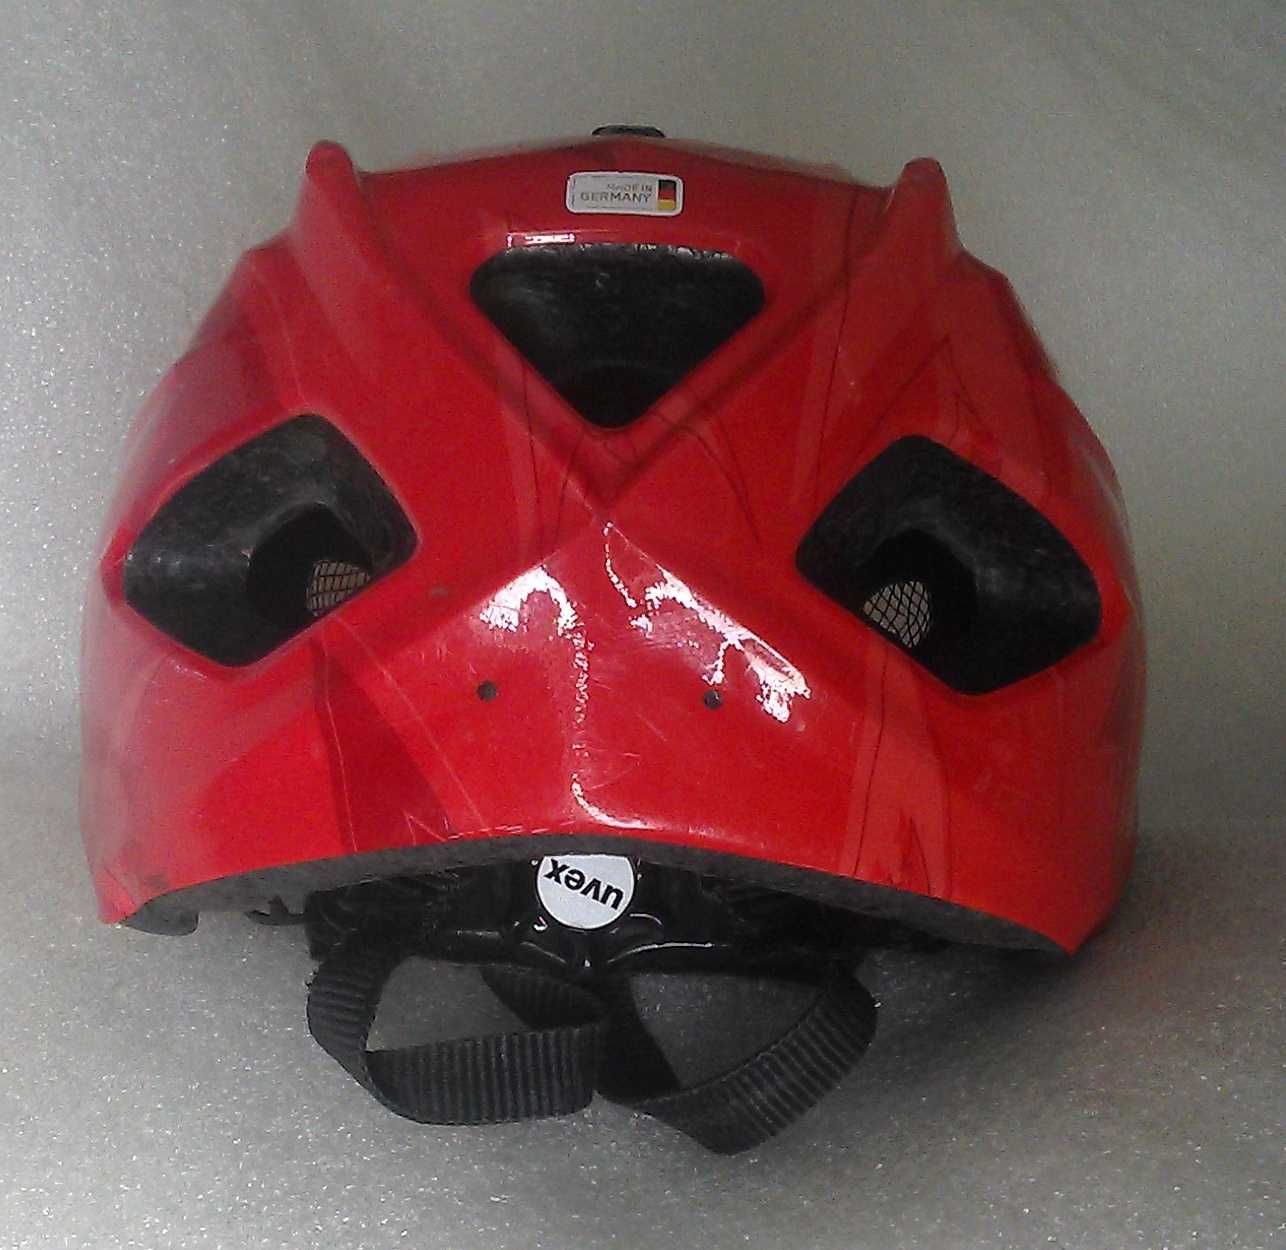 Велошлем велосипедный шлем детский с механизмом регулировки xxxs - s